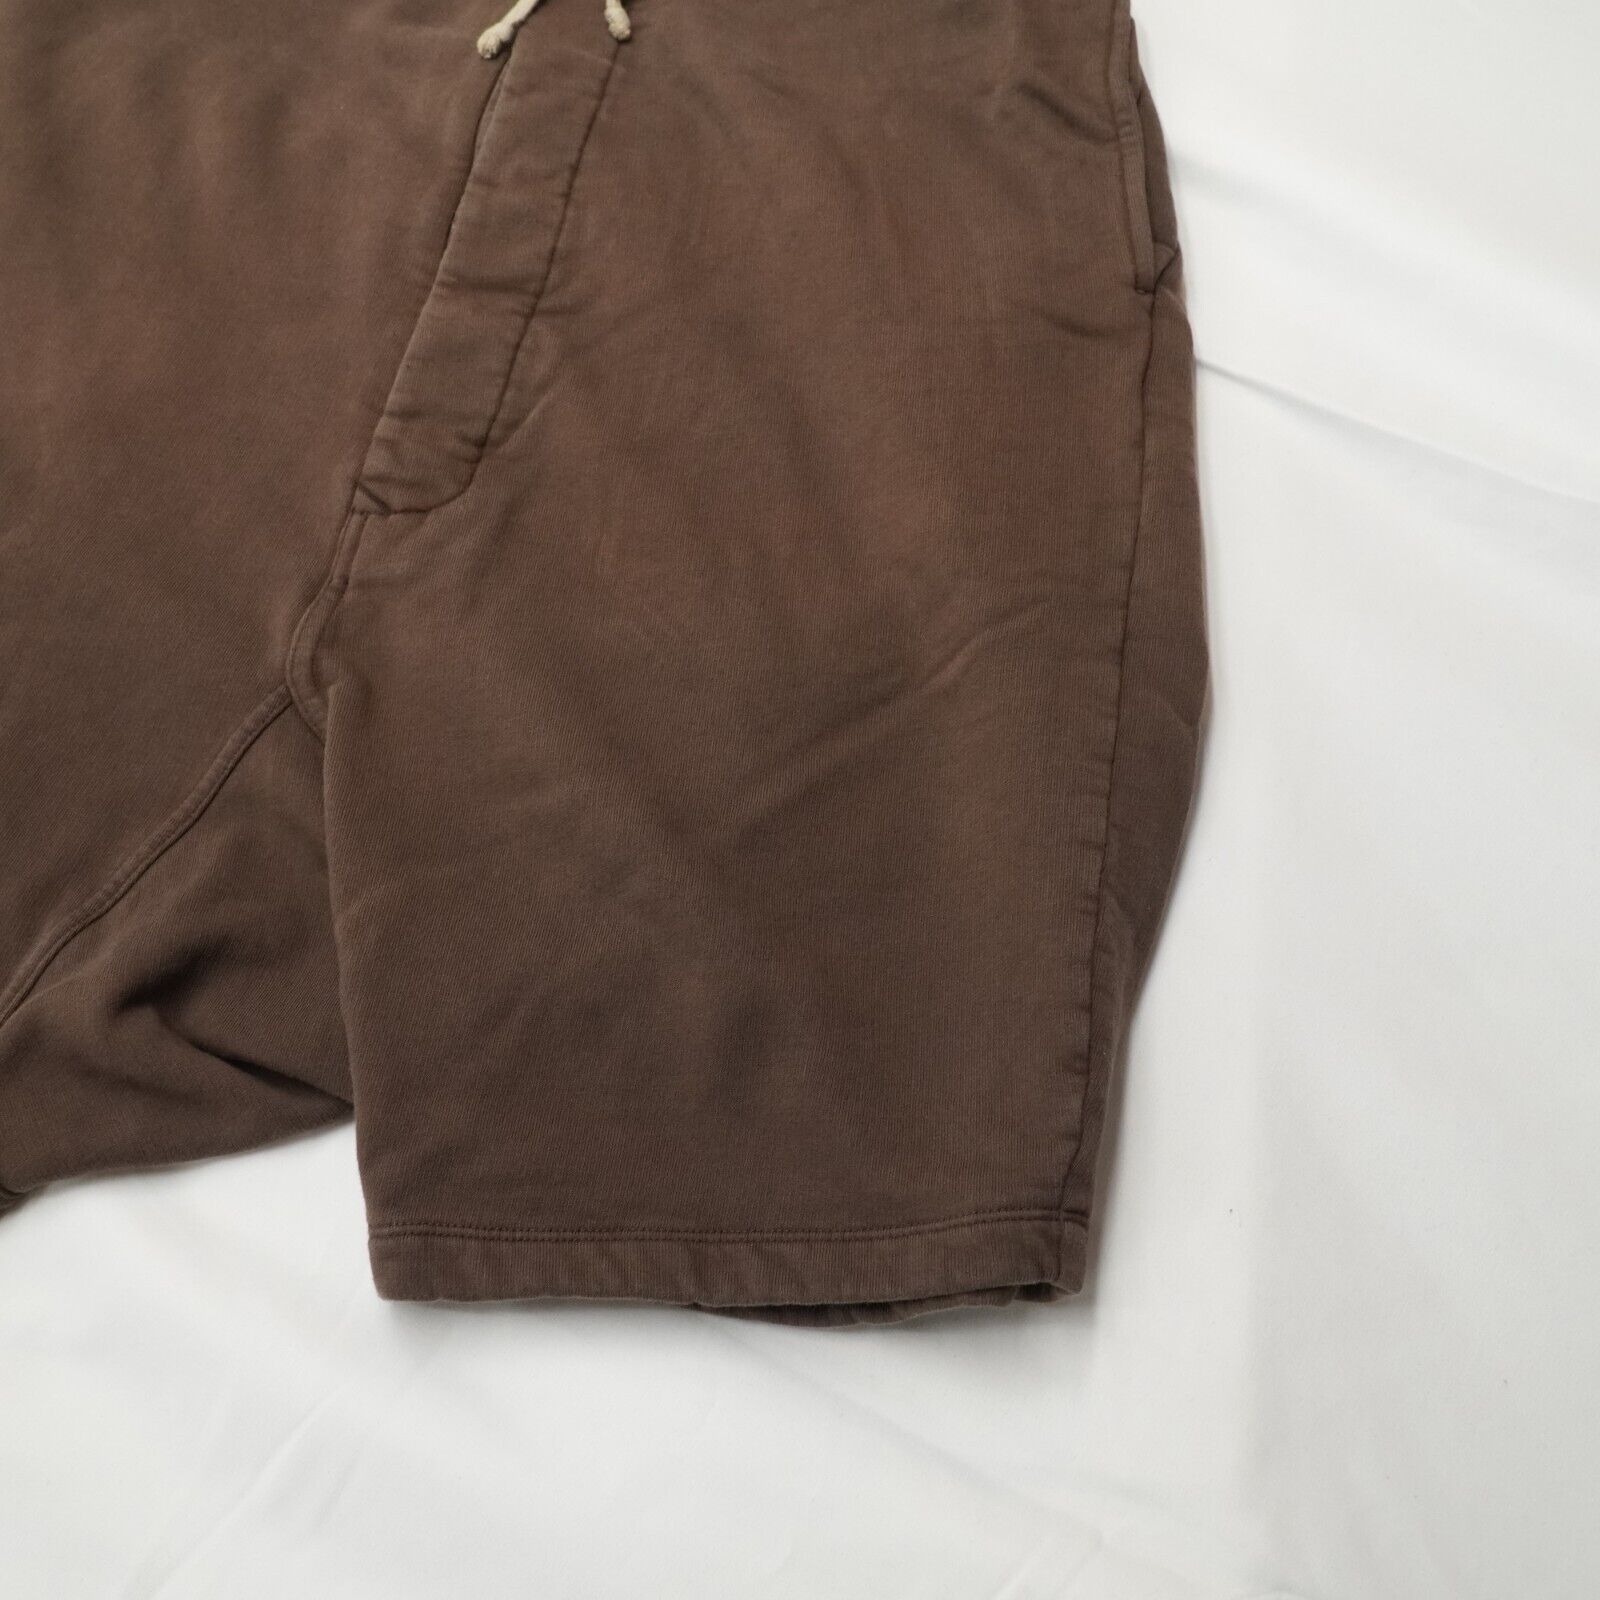 Rick Shorts Drop Crotch Cotton Macassar Brown Large - 6